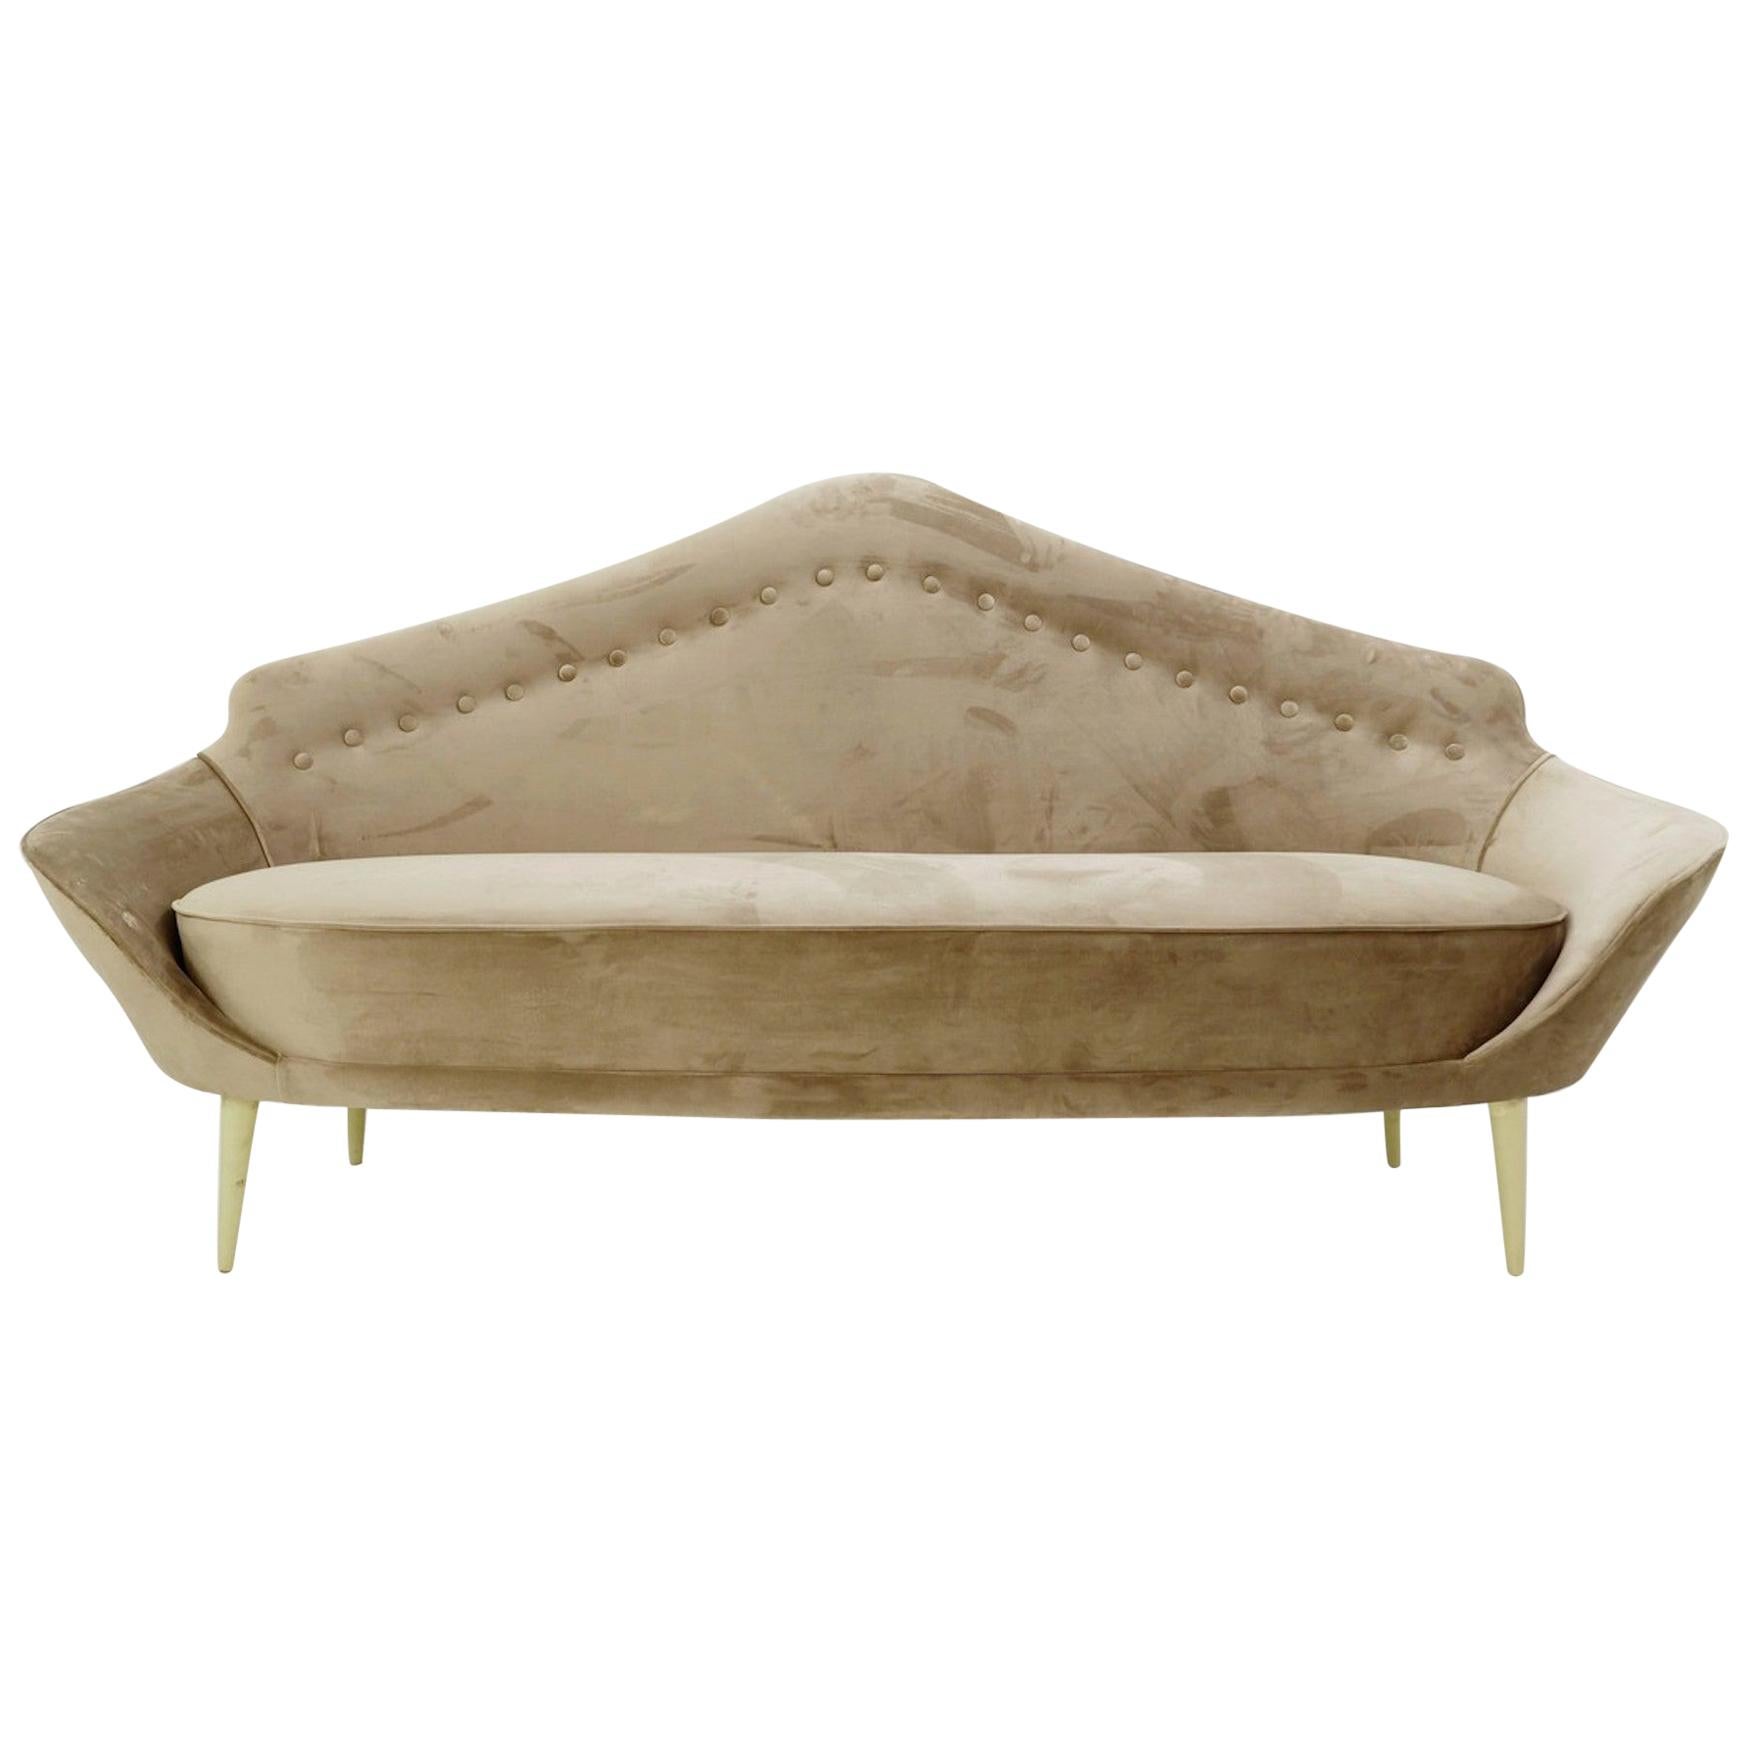 Italienisches Sofa mit spitzer Rückenlehne, Polsterung aus grauem Samt, neu